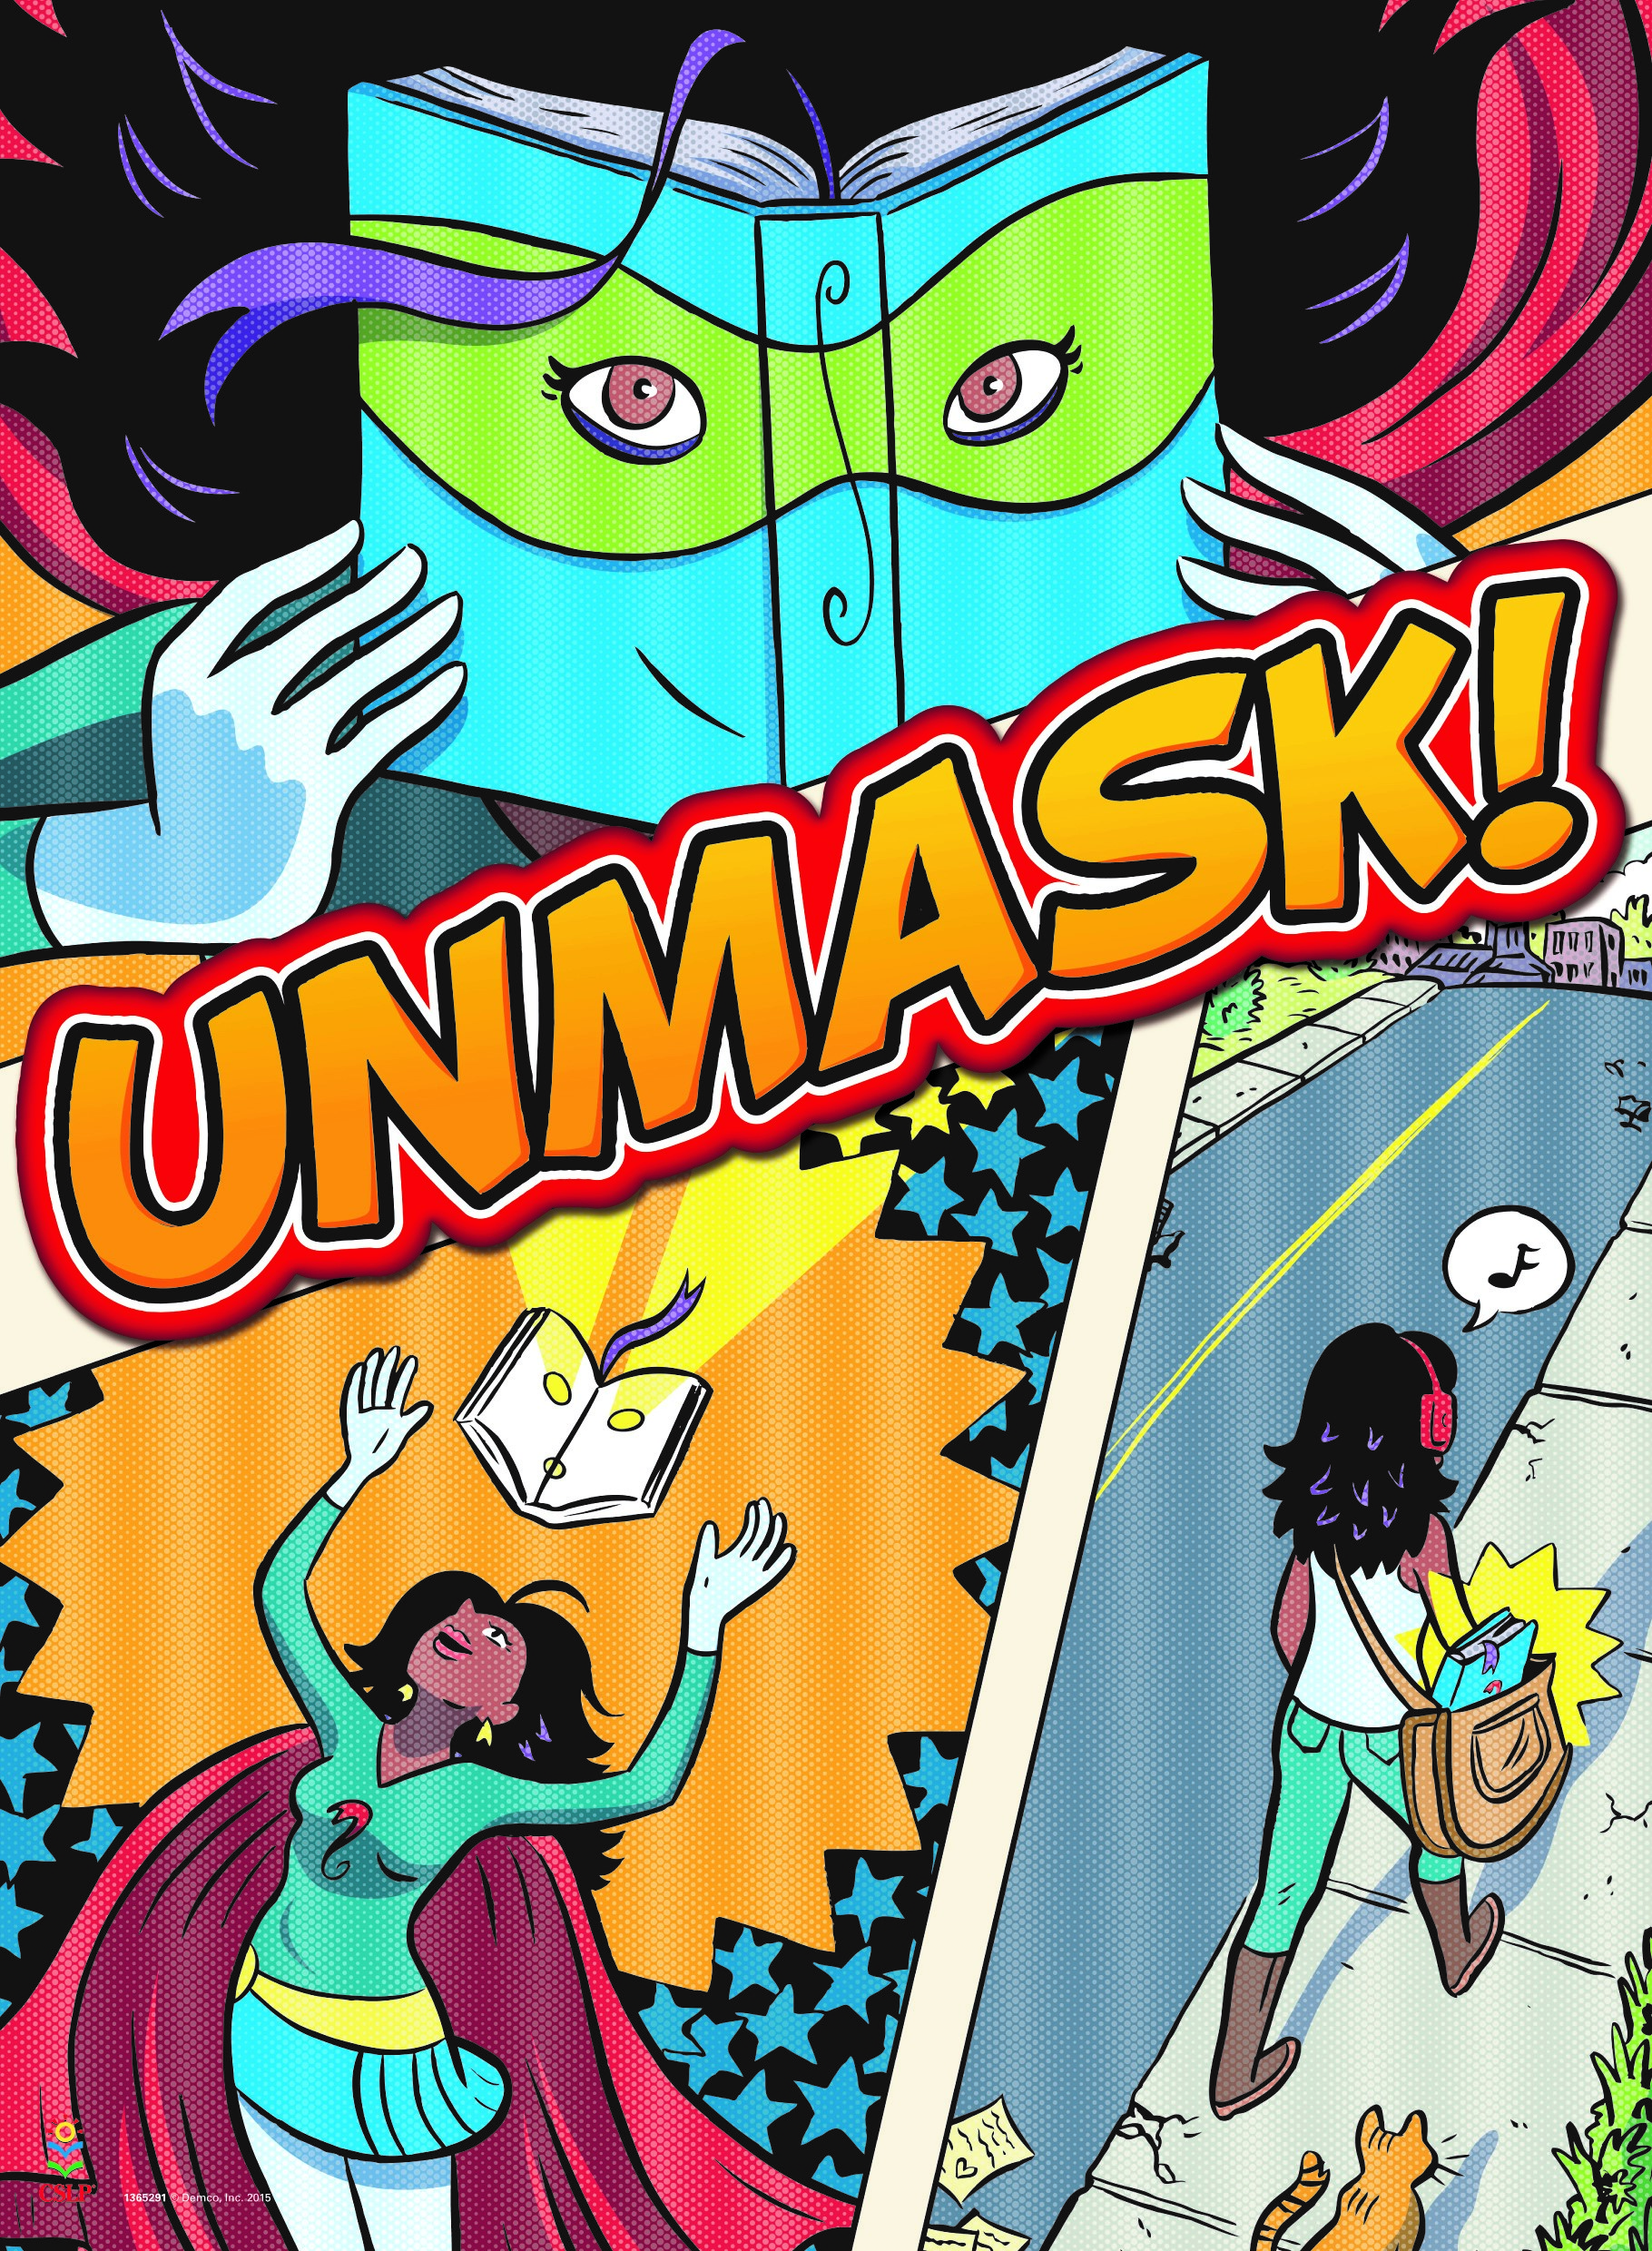 Unmask! - Teen Summer Reading Program Theme for 2015